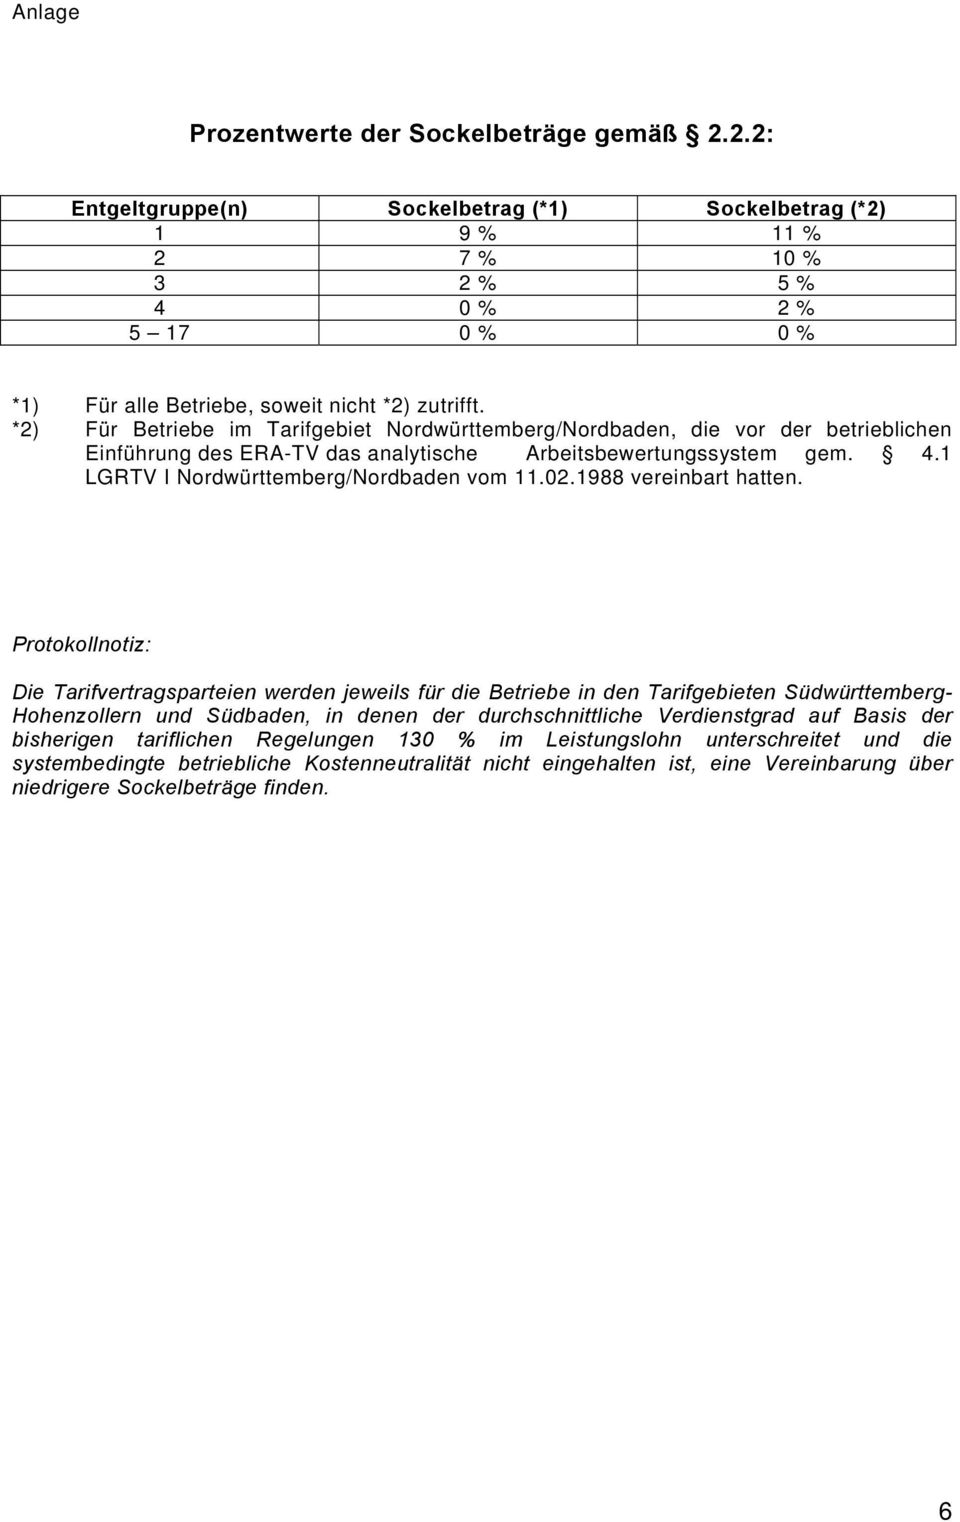 *2) Für Betriebe im Tarifgebiet Nordwürttemberg/Nordbaden, die vor der betrieblichen Einführung des ERA-TV das analytische Arbeitsbewertungssystem gem. 4.1 LGRTV I Nordwürttemberg/Nordbaden vom 11.02.